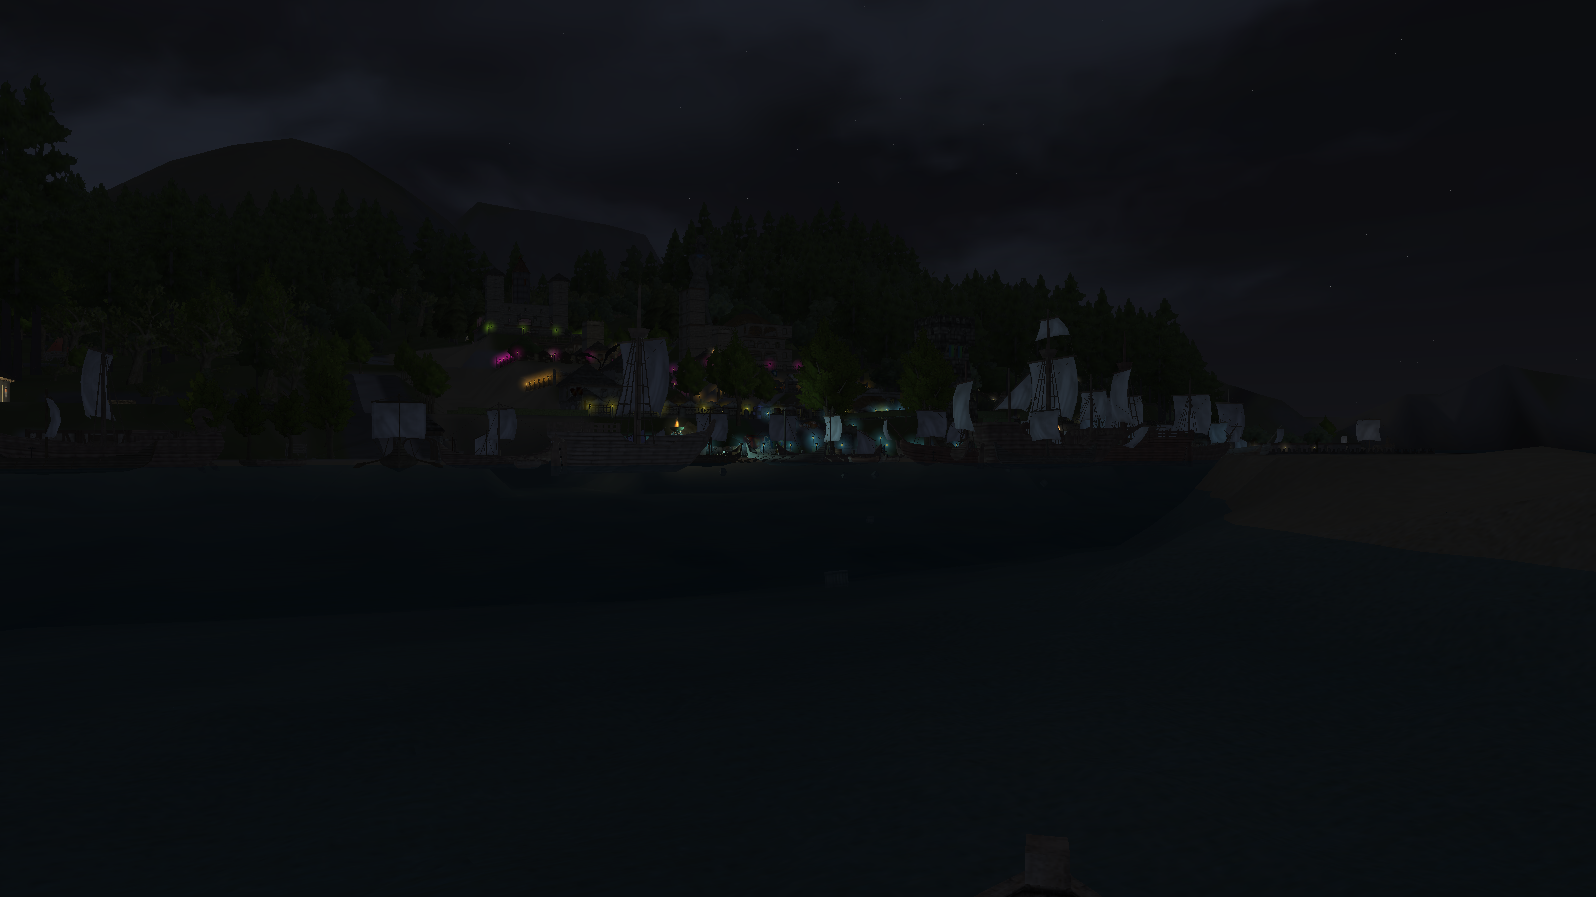 Bild: Hafen bei Nacht - Aufbruch nach Hause